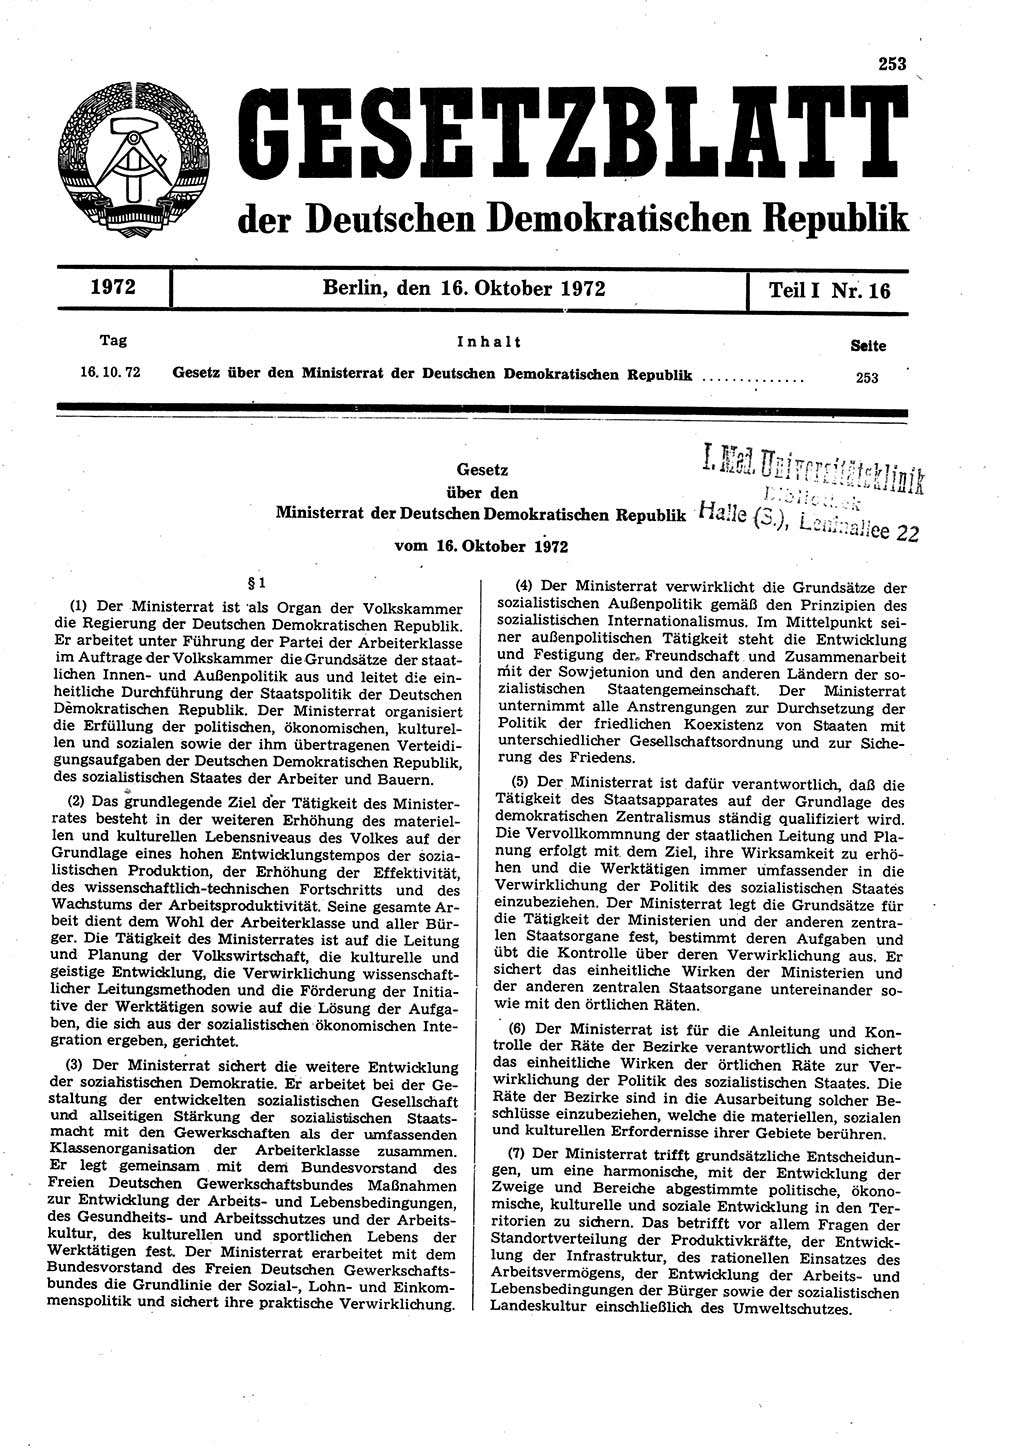 Gesetzblatt (GBl.) der Deutschen Demokratischen Republik (DDR) Teil Ⅰ 1972, Seite 253 (GBl. DDR Ⅰ 1972, S. 253)